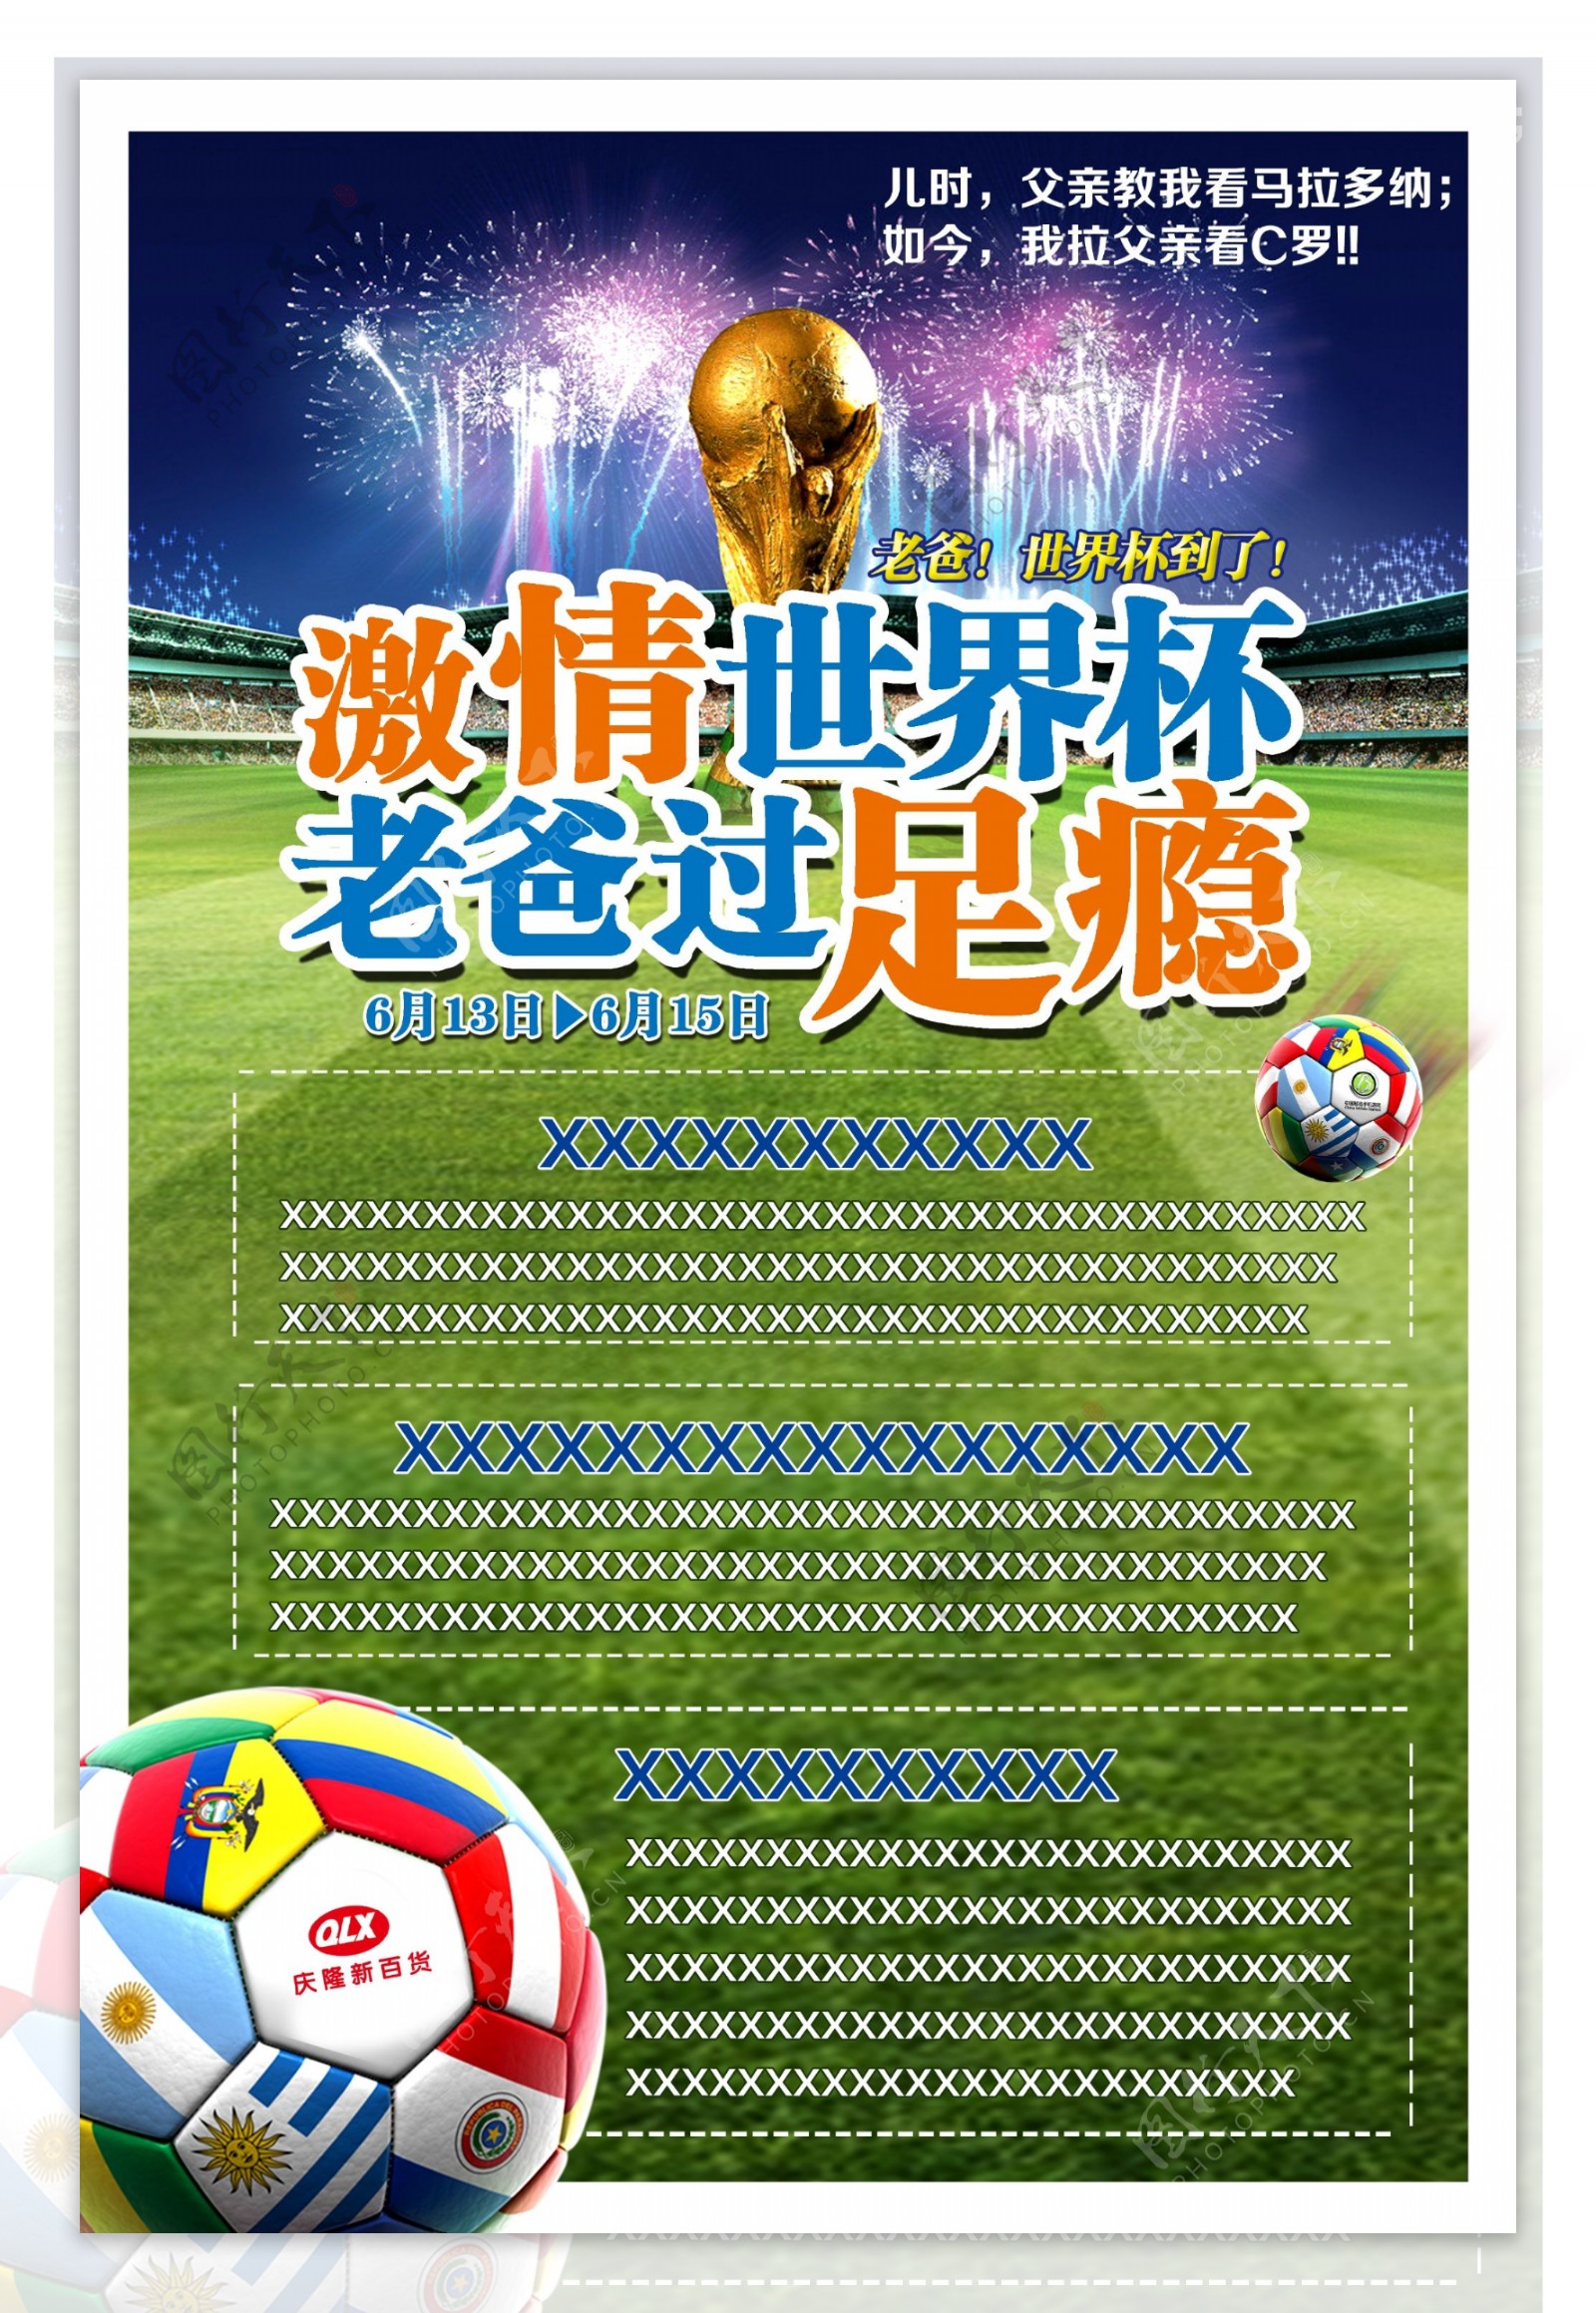 激情世界杯宣传单设计PSD素材